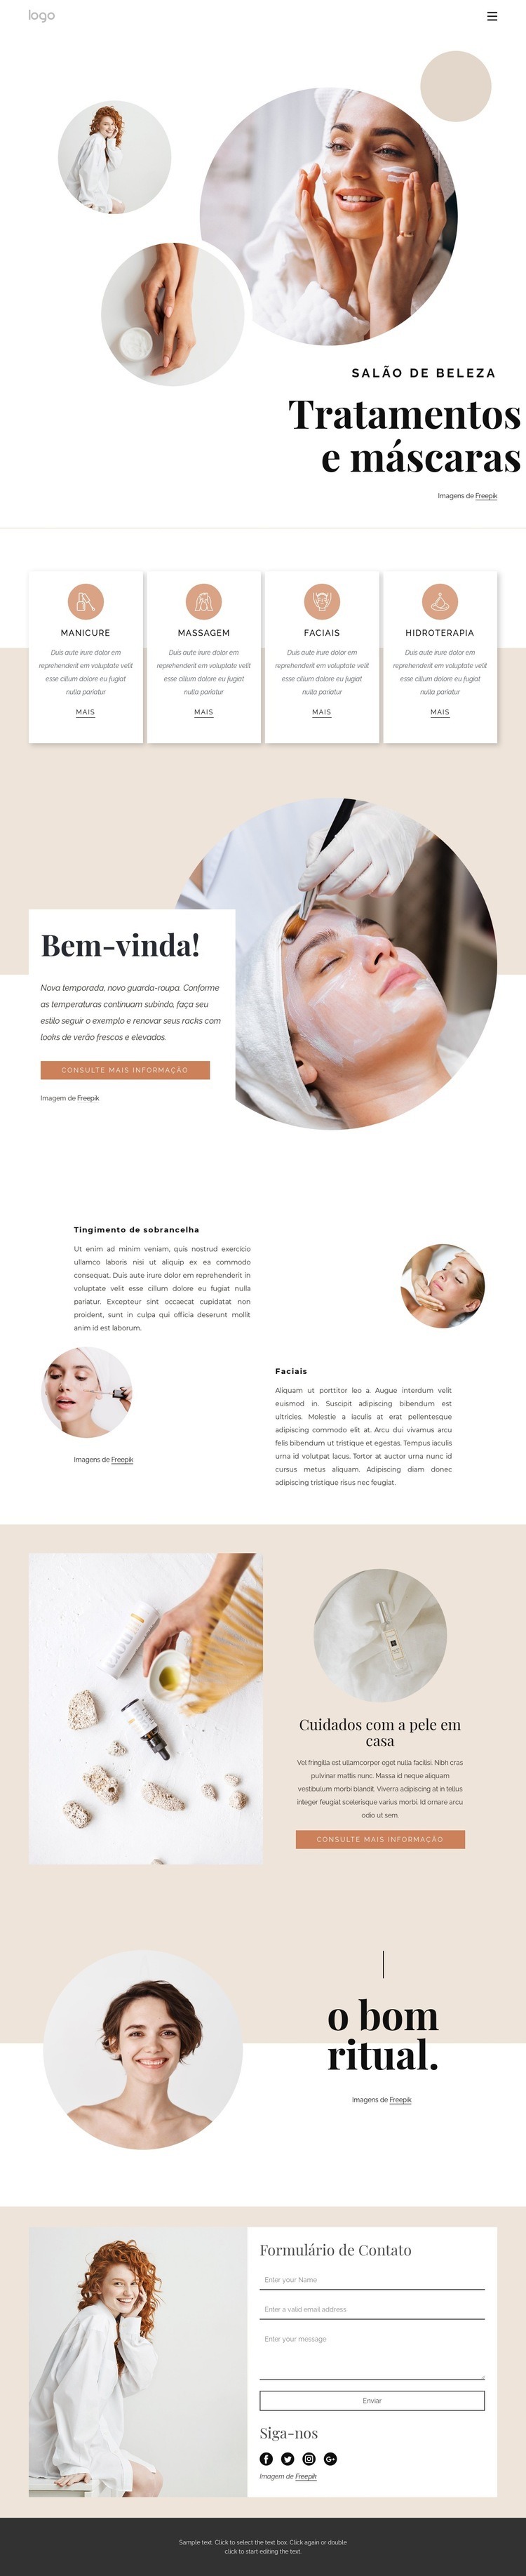 Tratamentos e massagens corporais Design do site